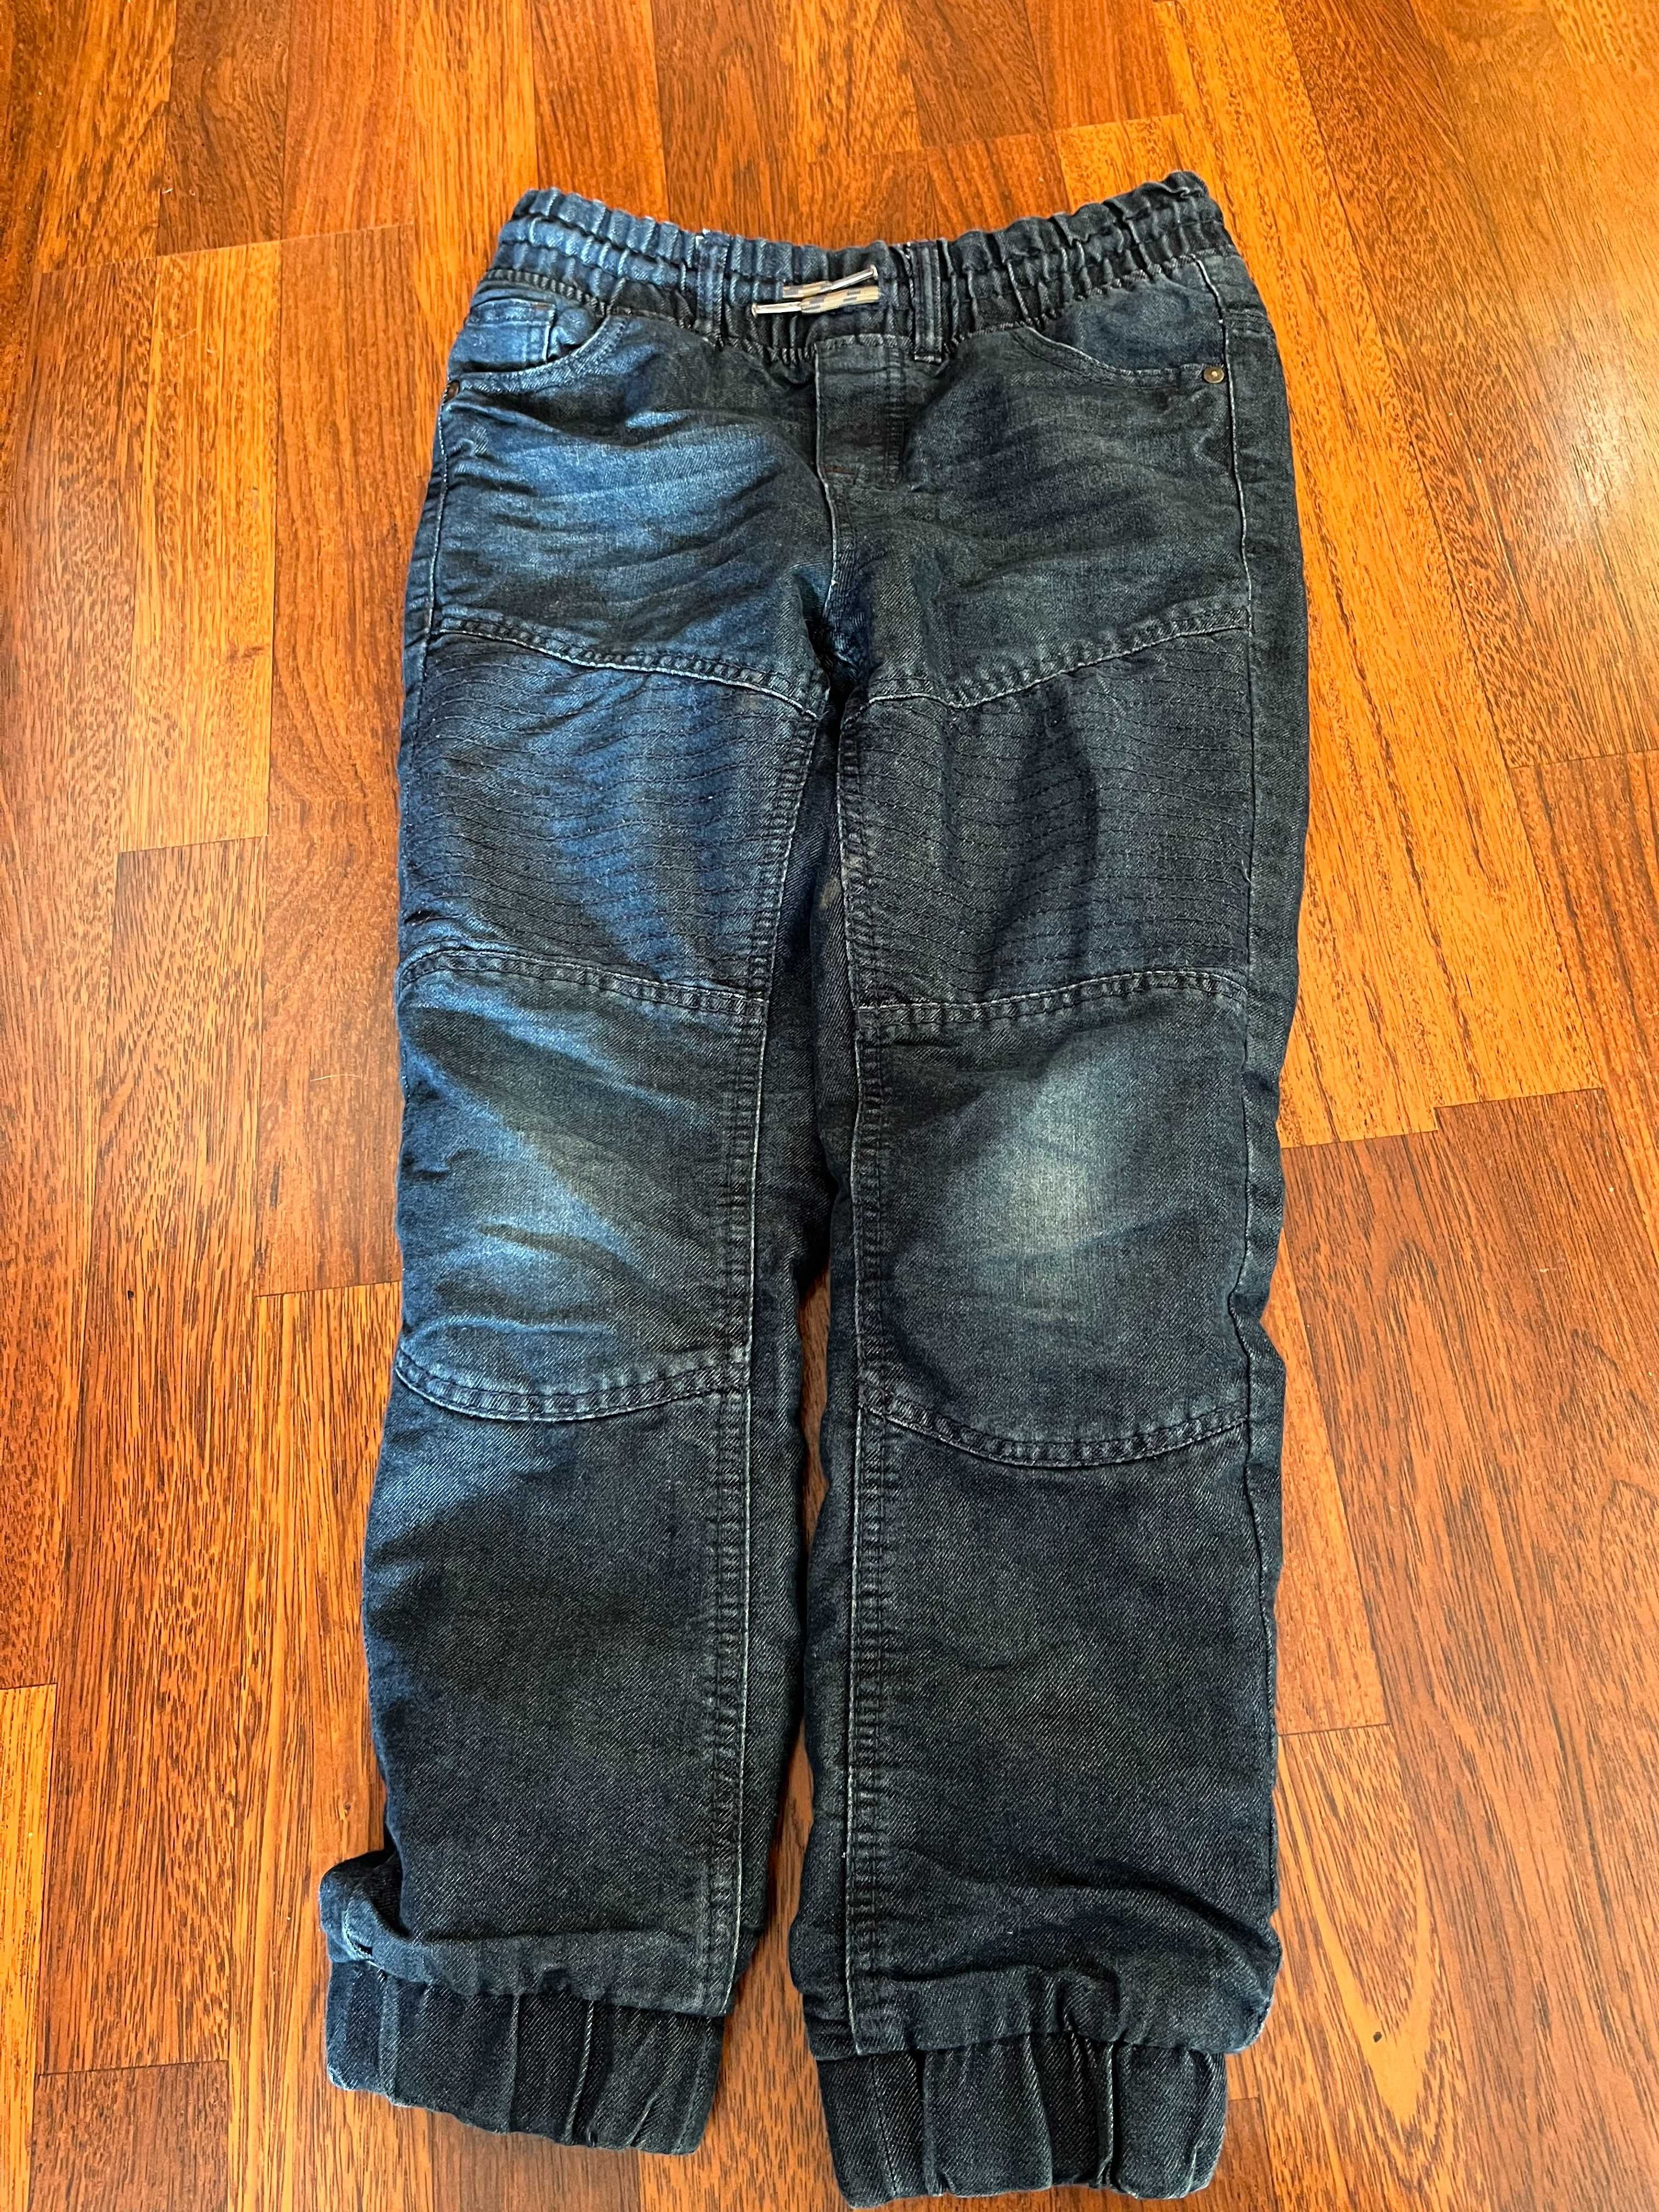 Spodnie chłopięce jeansowe Smyk, 8-10 lat lat, 140/146